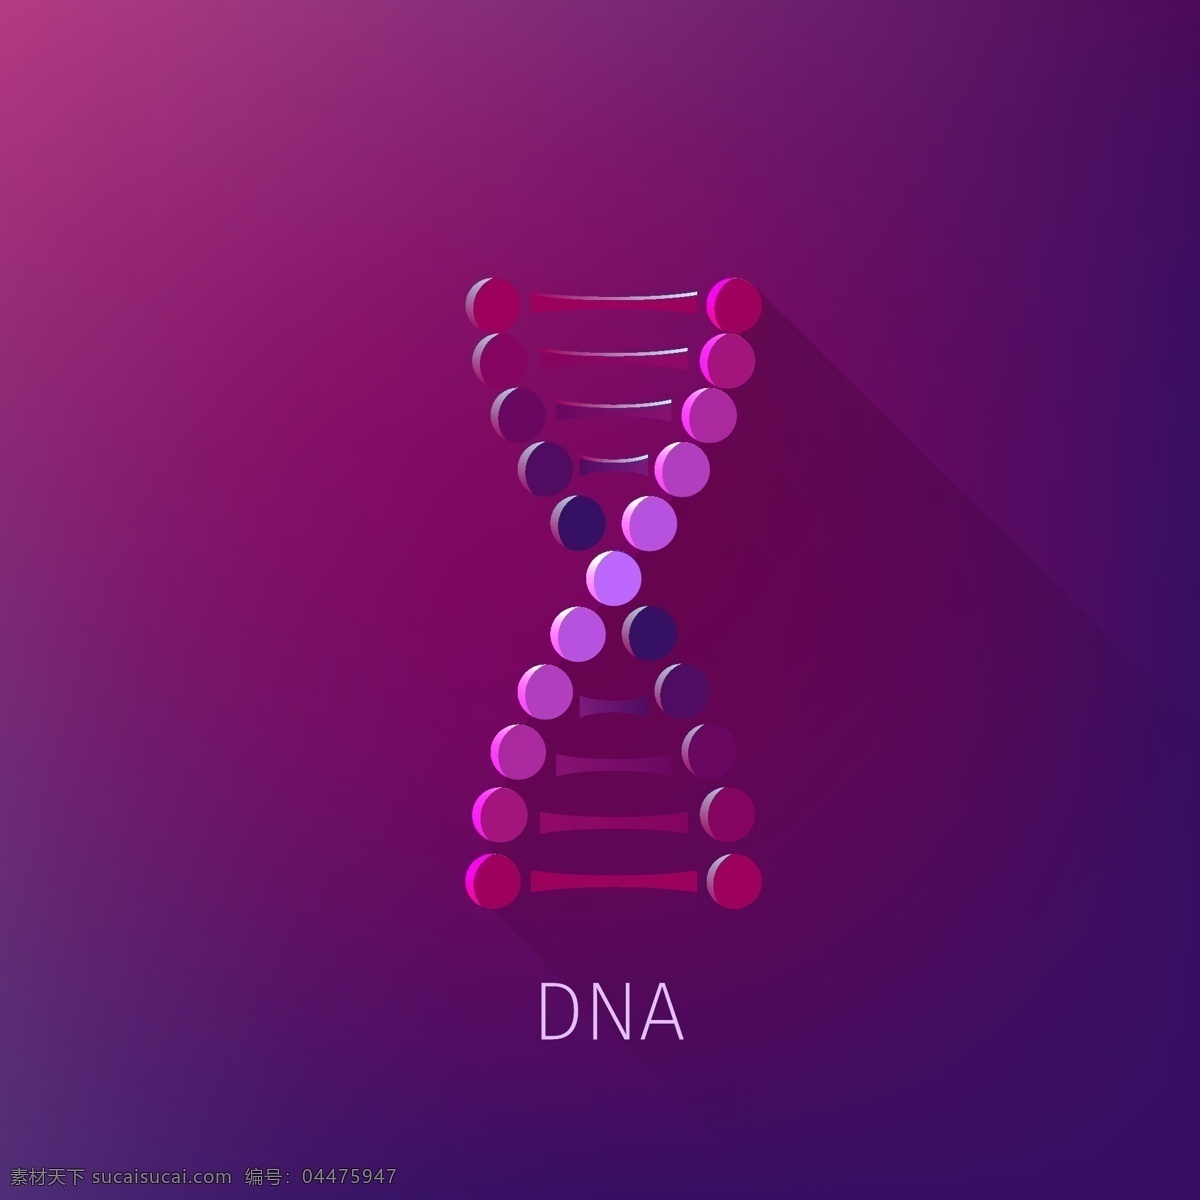 dna 科学 医学 生物 生物化学 生物学 技术细胞 化学 铬染 色体 克隆 代码 进化